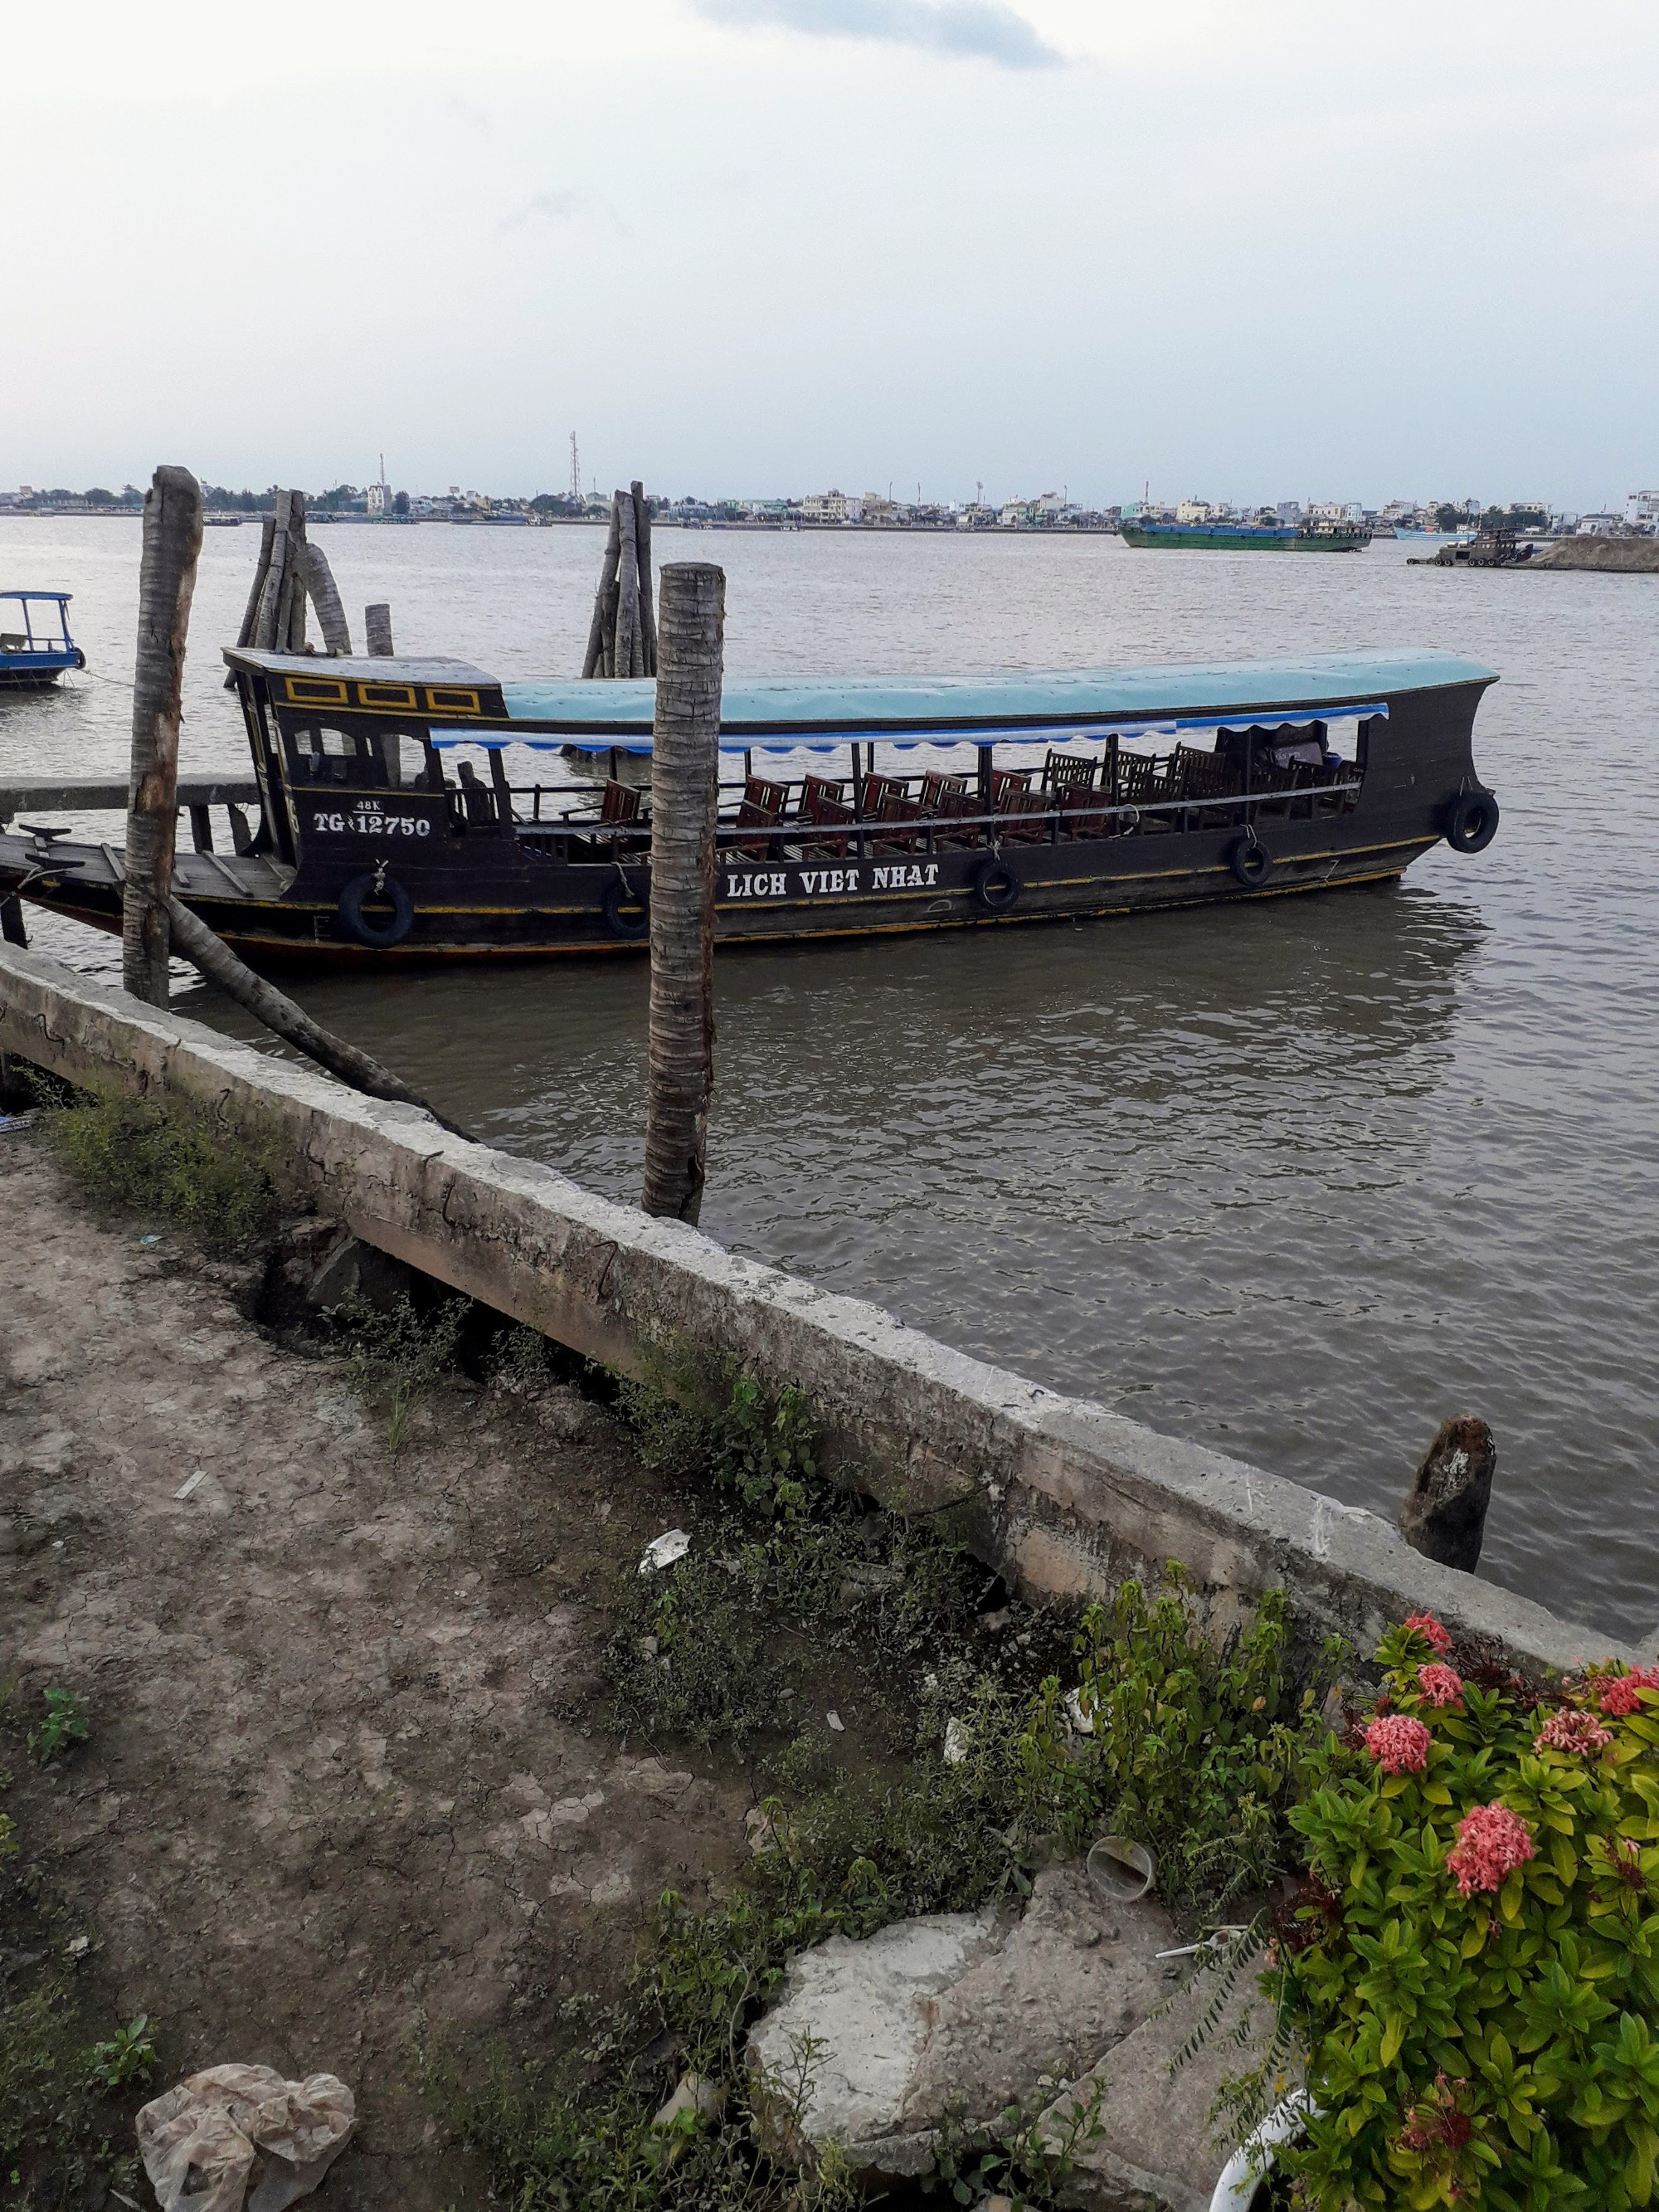 Ready to cross the Mekong River, Mekong Delta, Vietnam